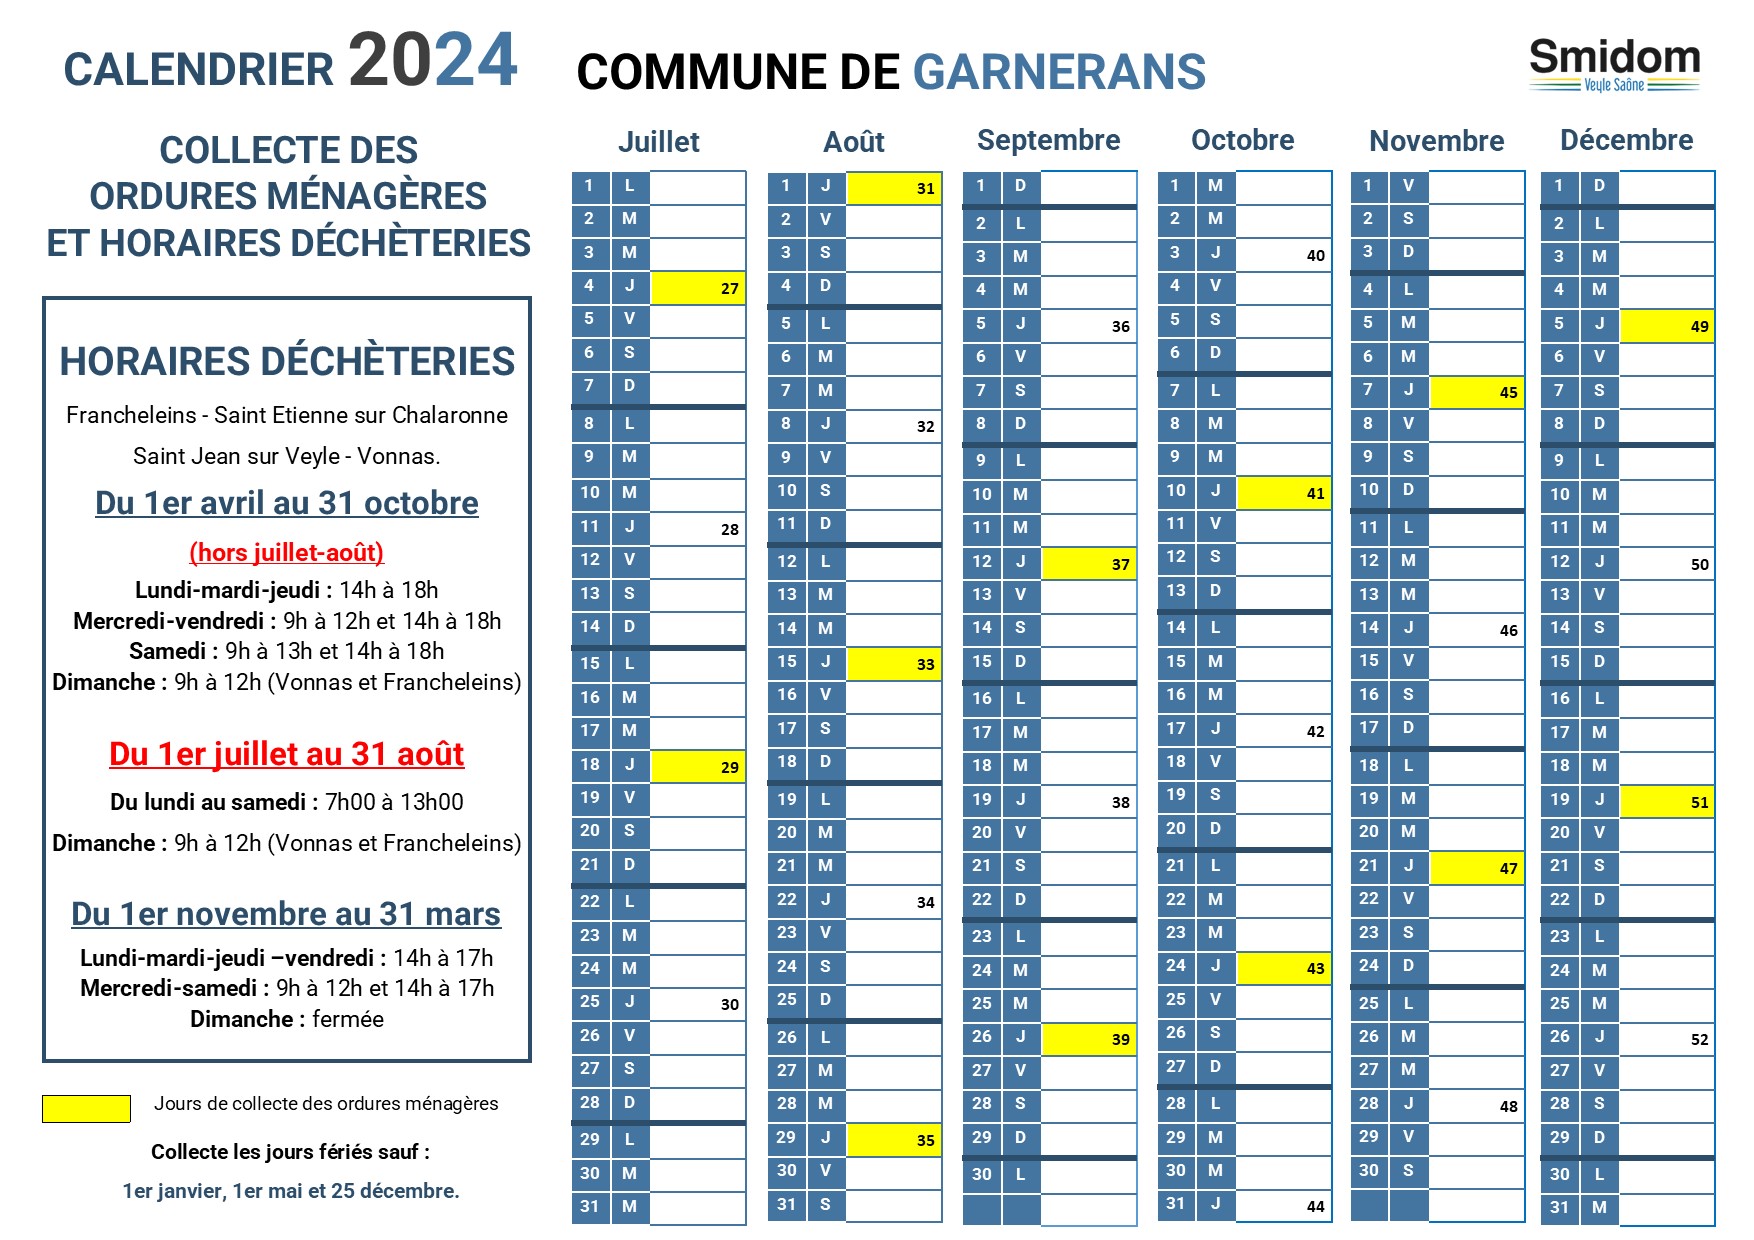 GARNERANS - Calendrier 2024 - 2.jpg